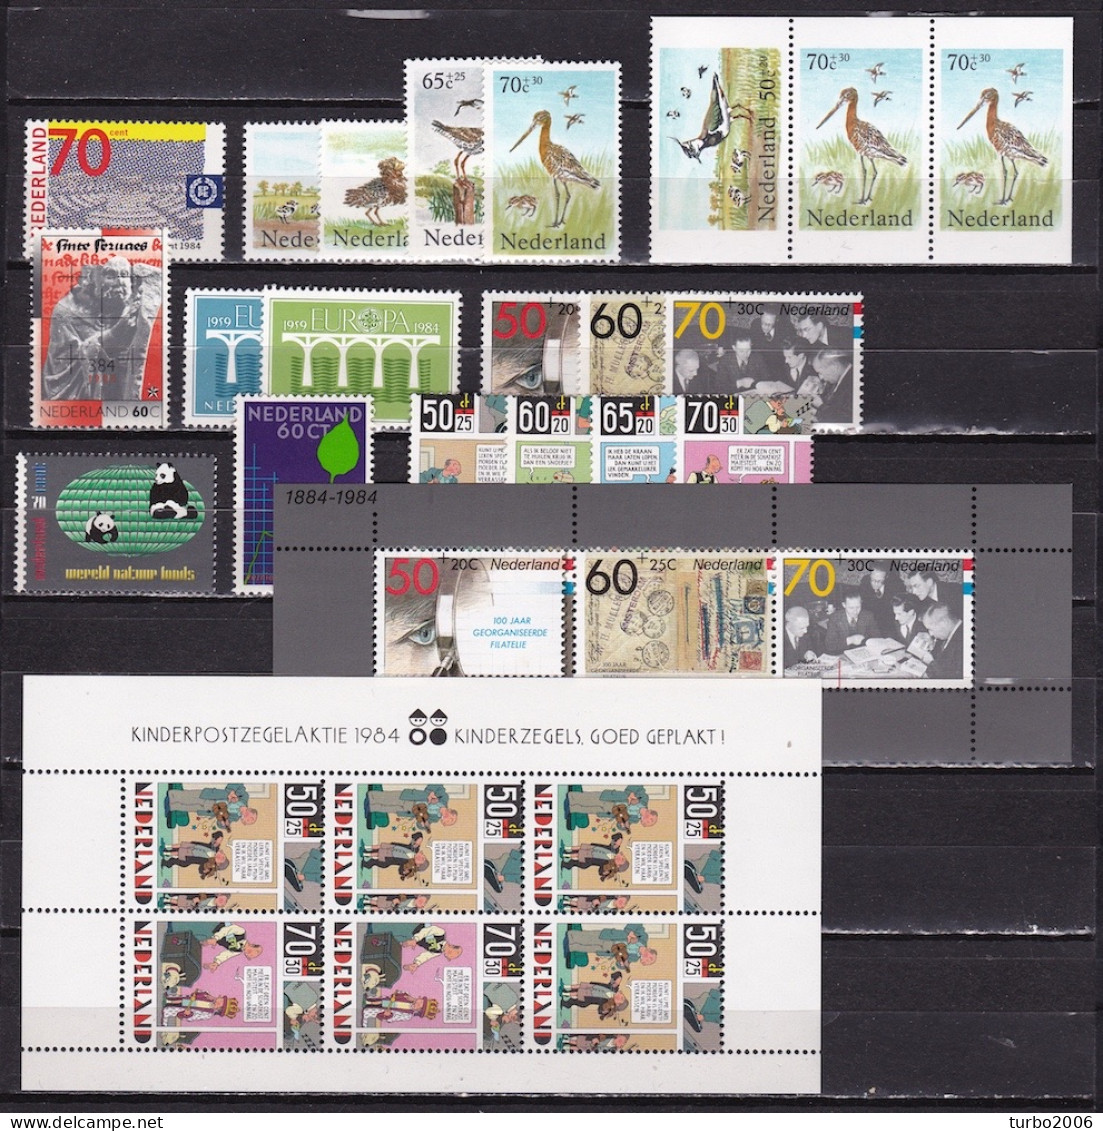 Nederland : 1984 Bijna Complete Postfrisse Jaargang NVPH  1300 / 1311 - 1313 /1320 - Volledig Jaar